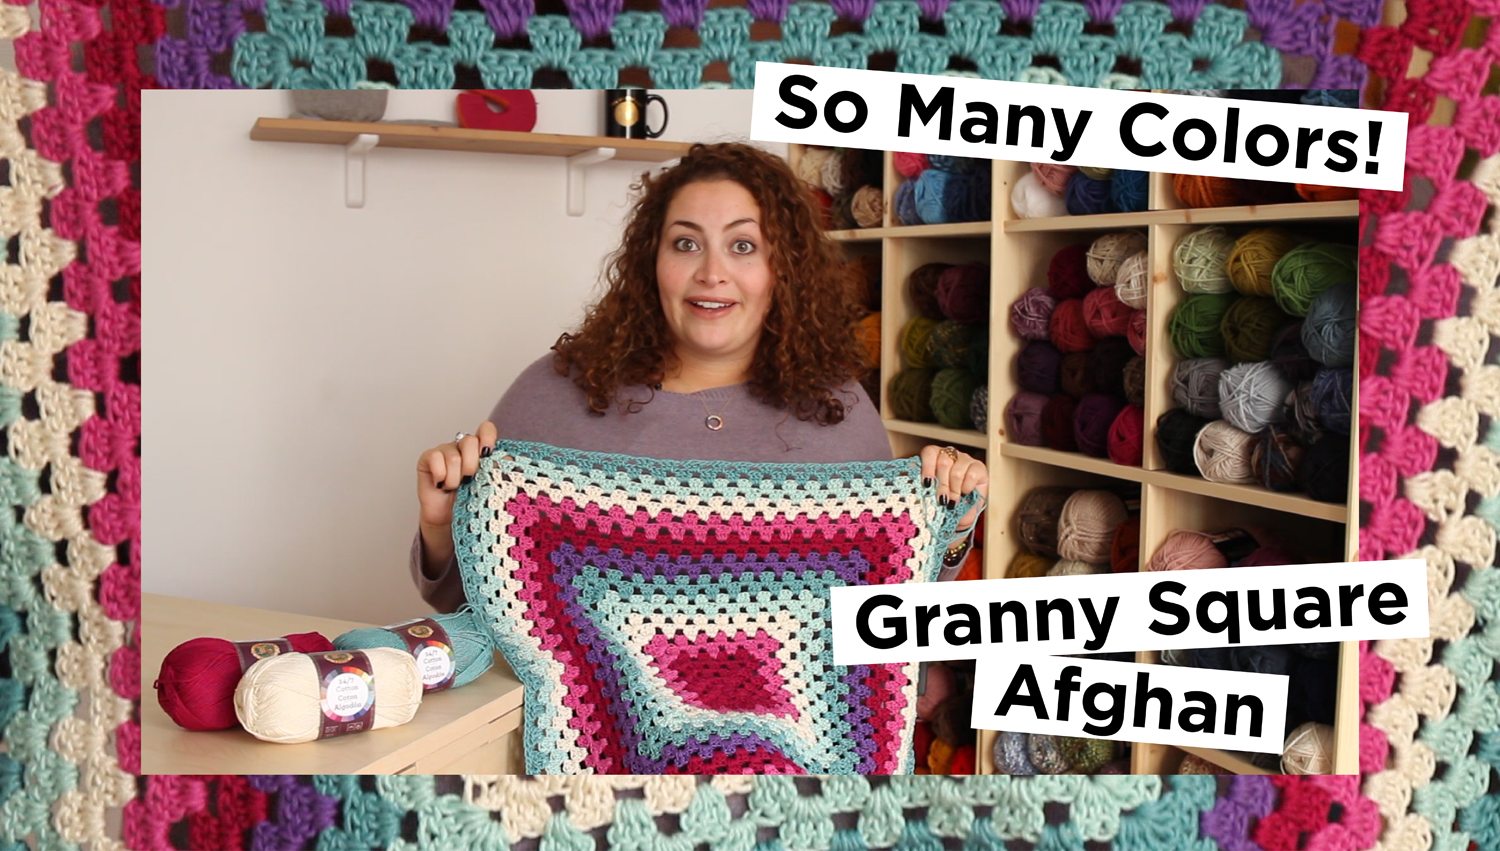 Cotton Knitting & Crochet Yarn – Lion Brand Yarn